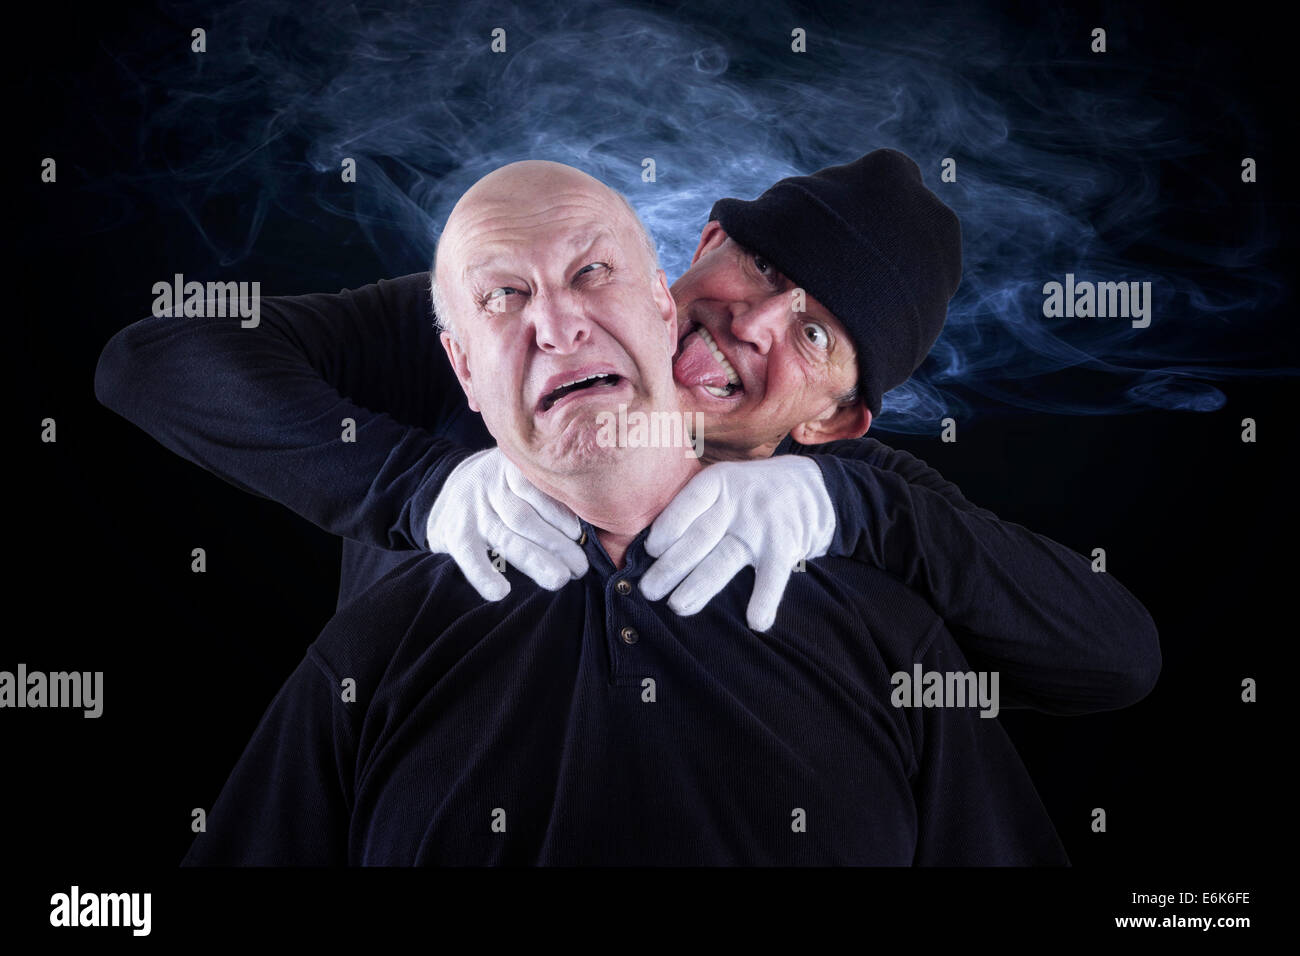 Senior Citizen, 62 años, asfixia a su pareja, de 55 años, tras una disputa Foto de stock